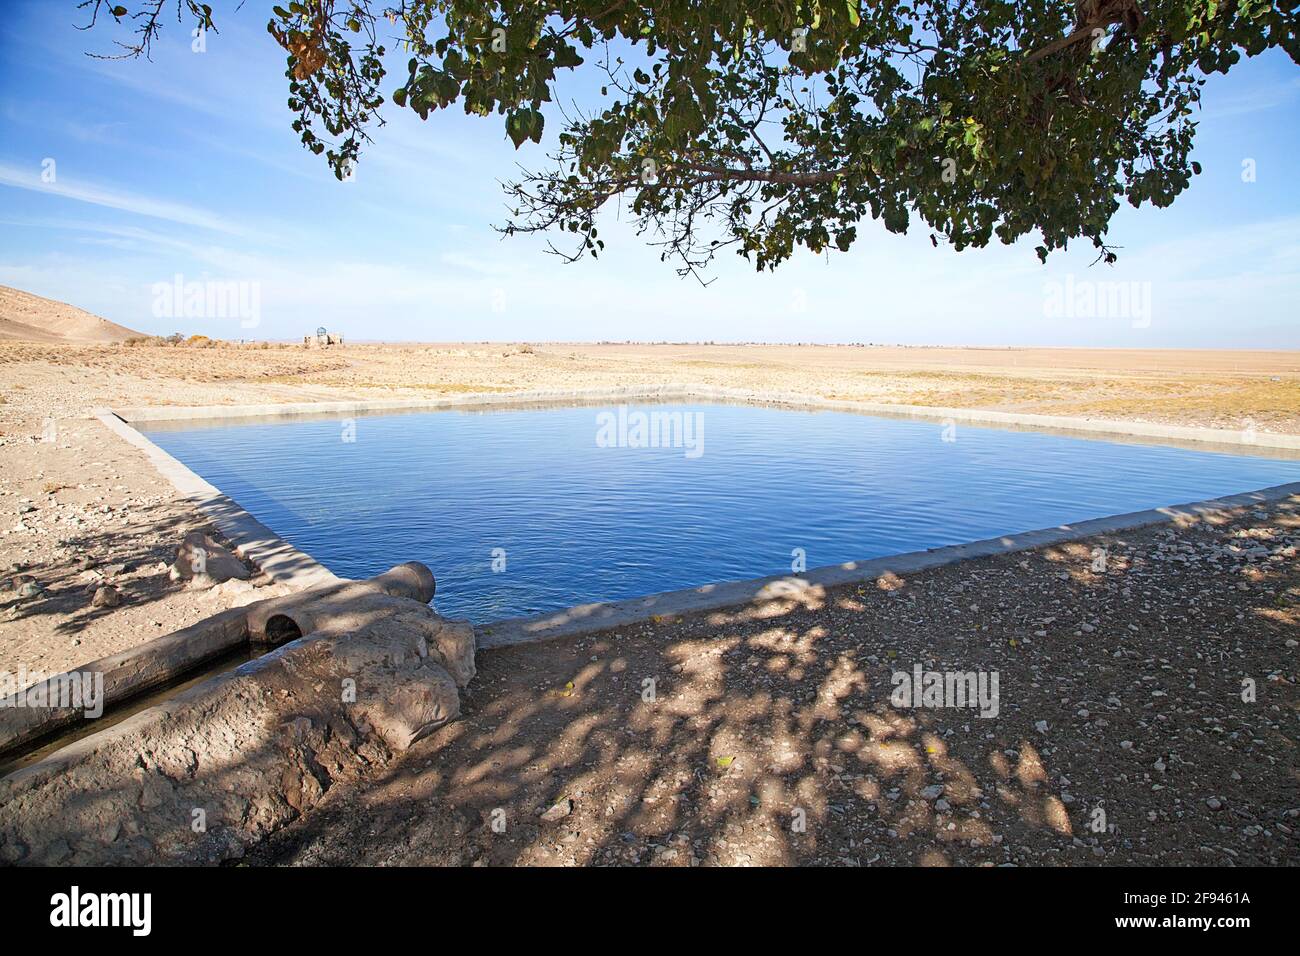 Im Becken wird Grundwasser aufbewahrt, um die Safranplantagen in Golbu zu bewässern. Golbu ist ein kleines Dorf in der Provinz Khorasan. Stock Photo